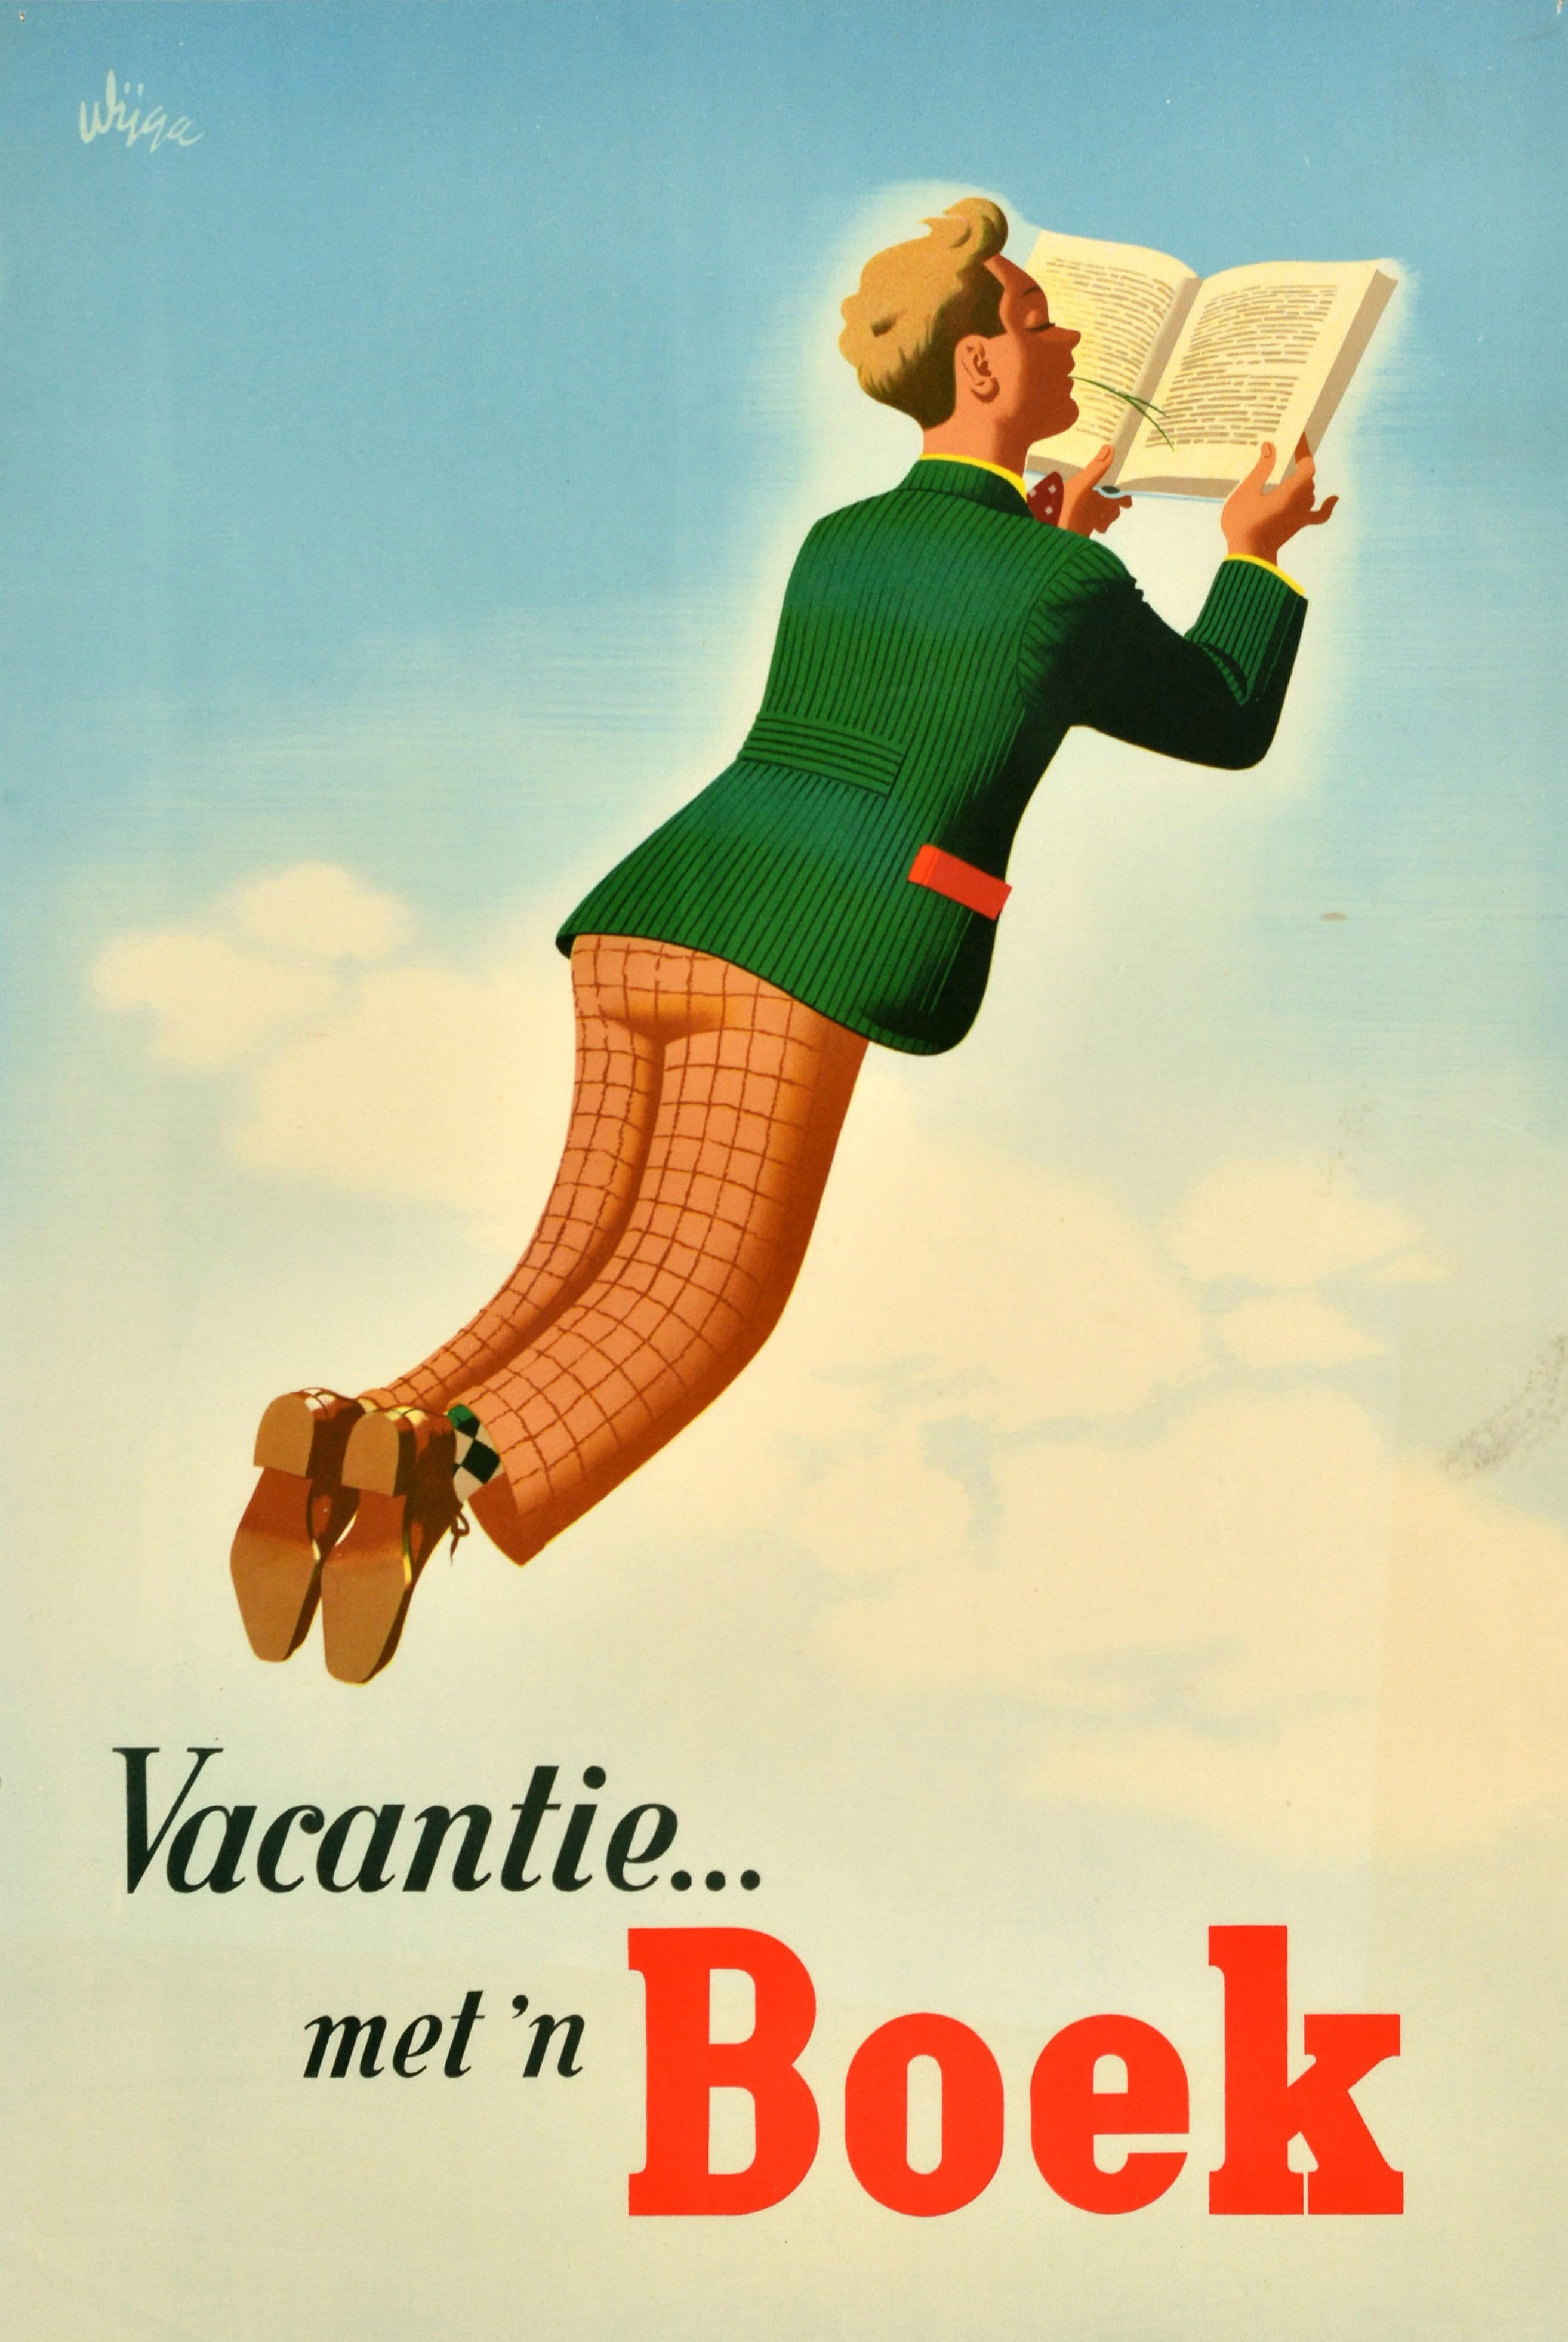 Affiche publicitaire vintage originale - Vacantie... met 'n Boek / Vacances avec un livre - conçue par Jan Wijga (1902-1978) représentant un homme décontracté portant une veste verte et un pantalon à carreaux lisant un livre, allongé et flottant sur